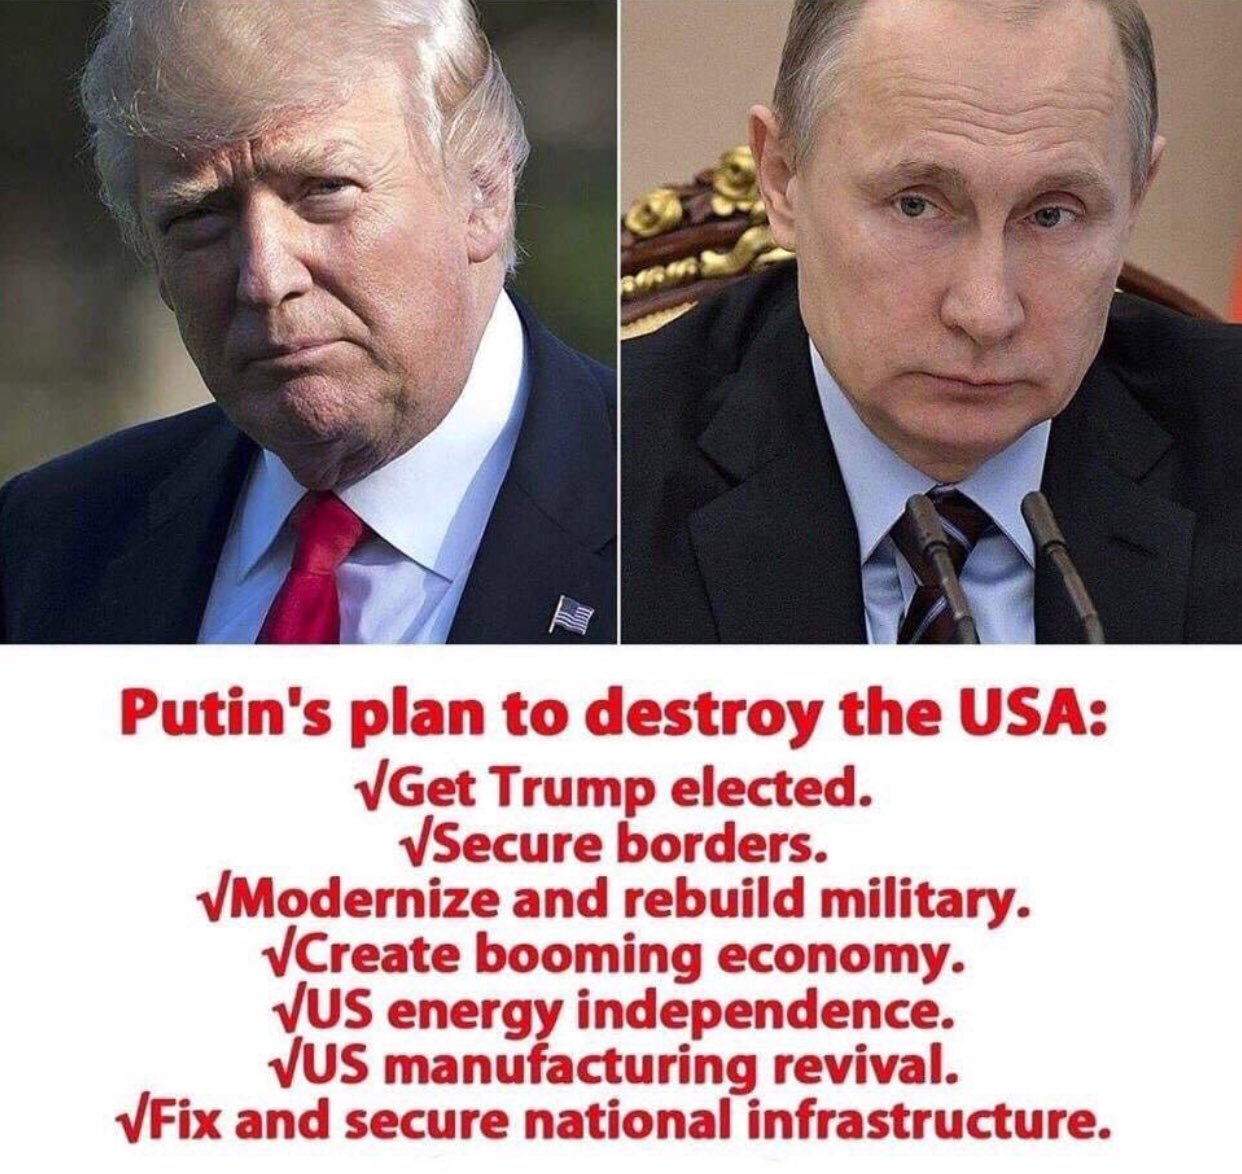 Putin's plan